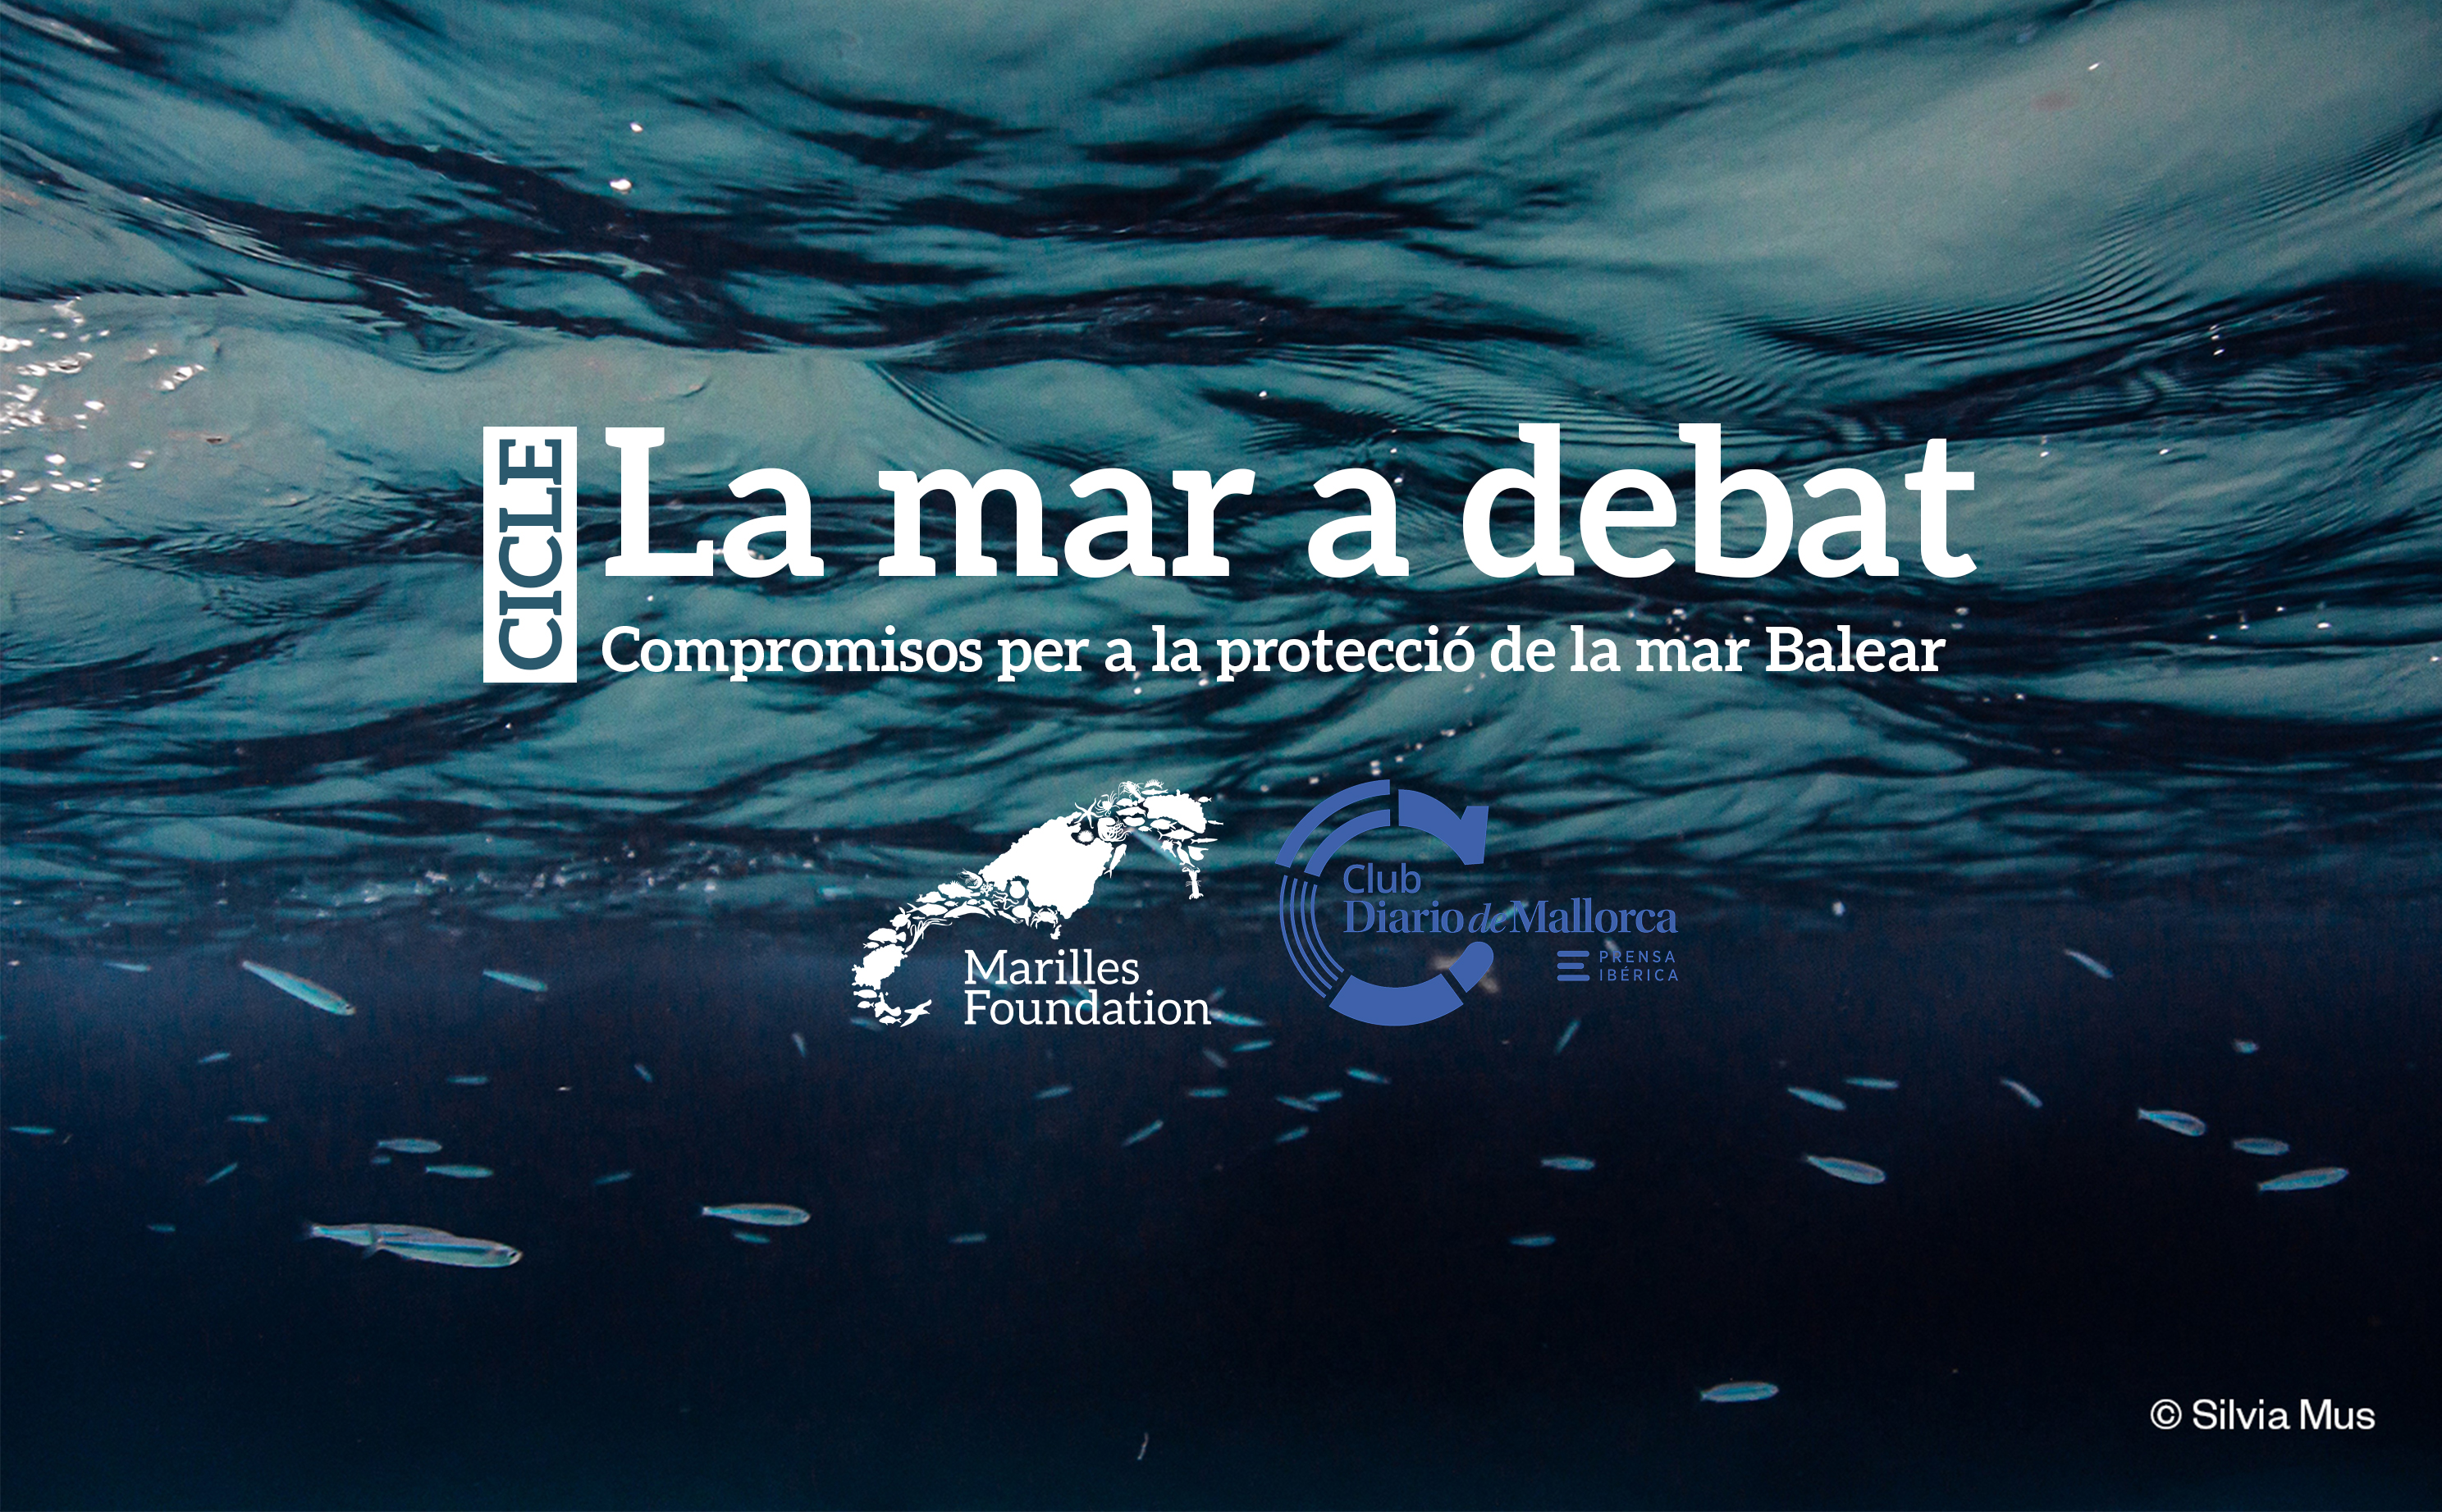 Pescadors, empresaris, polítics, clubs nàutics i ciutadania organitzada cerquen solucions per conservar la mar Balear